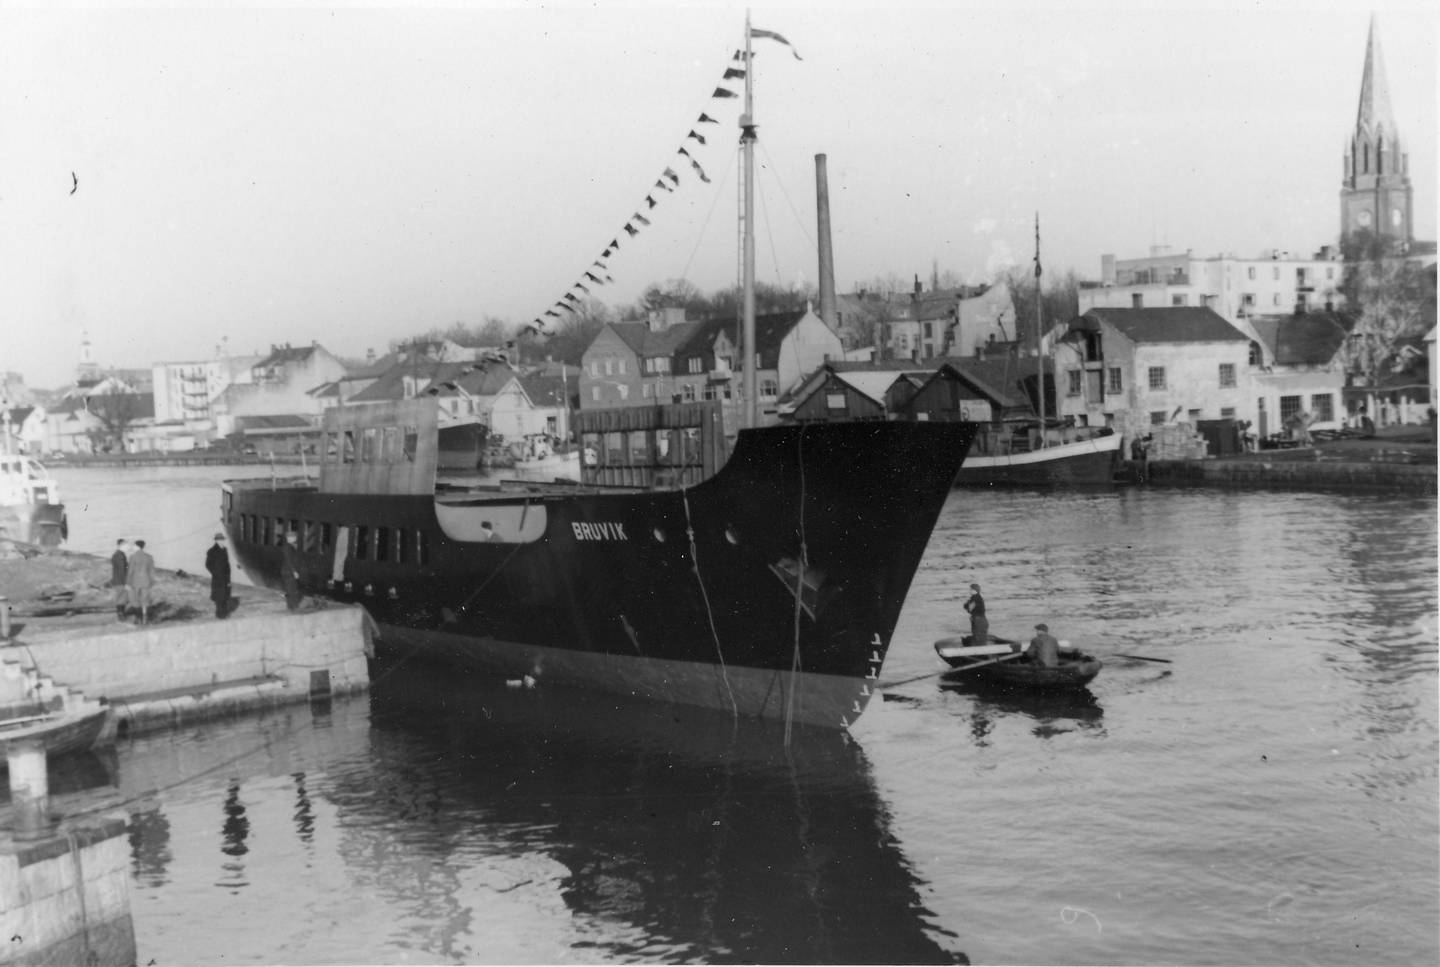 Sjøsetting av MS Bruvik ved Glommens Mekaniske verksted (GMV) på Kråkerøy i Fredrisktad i 1949.